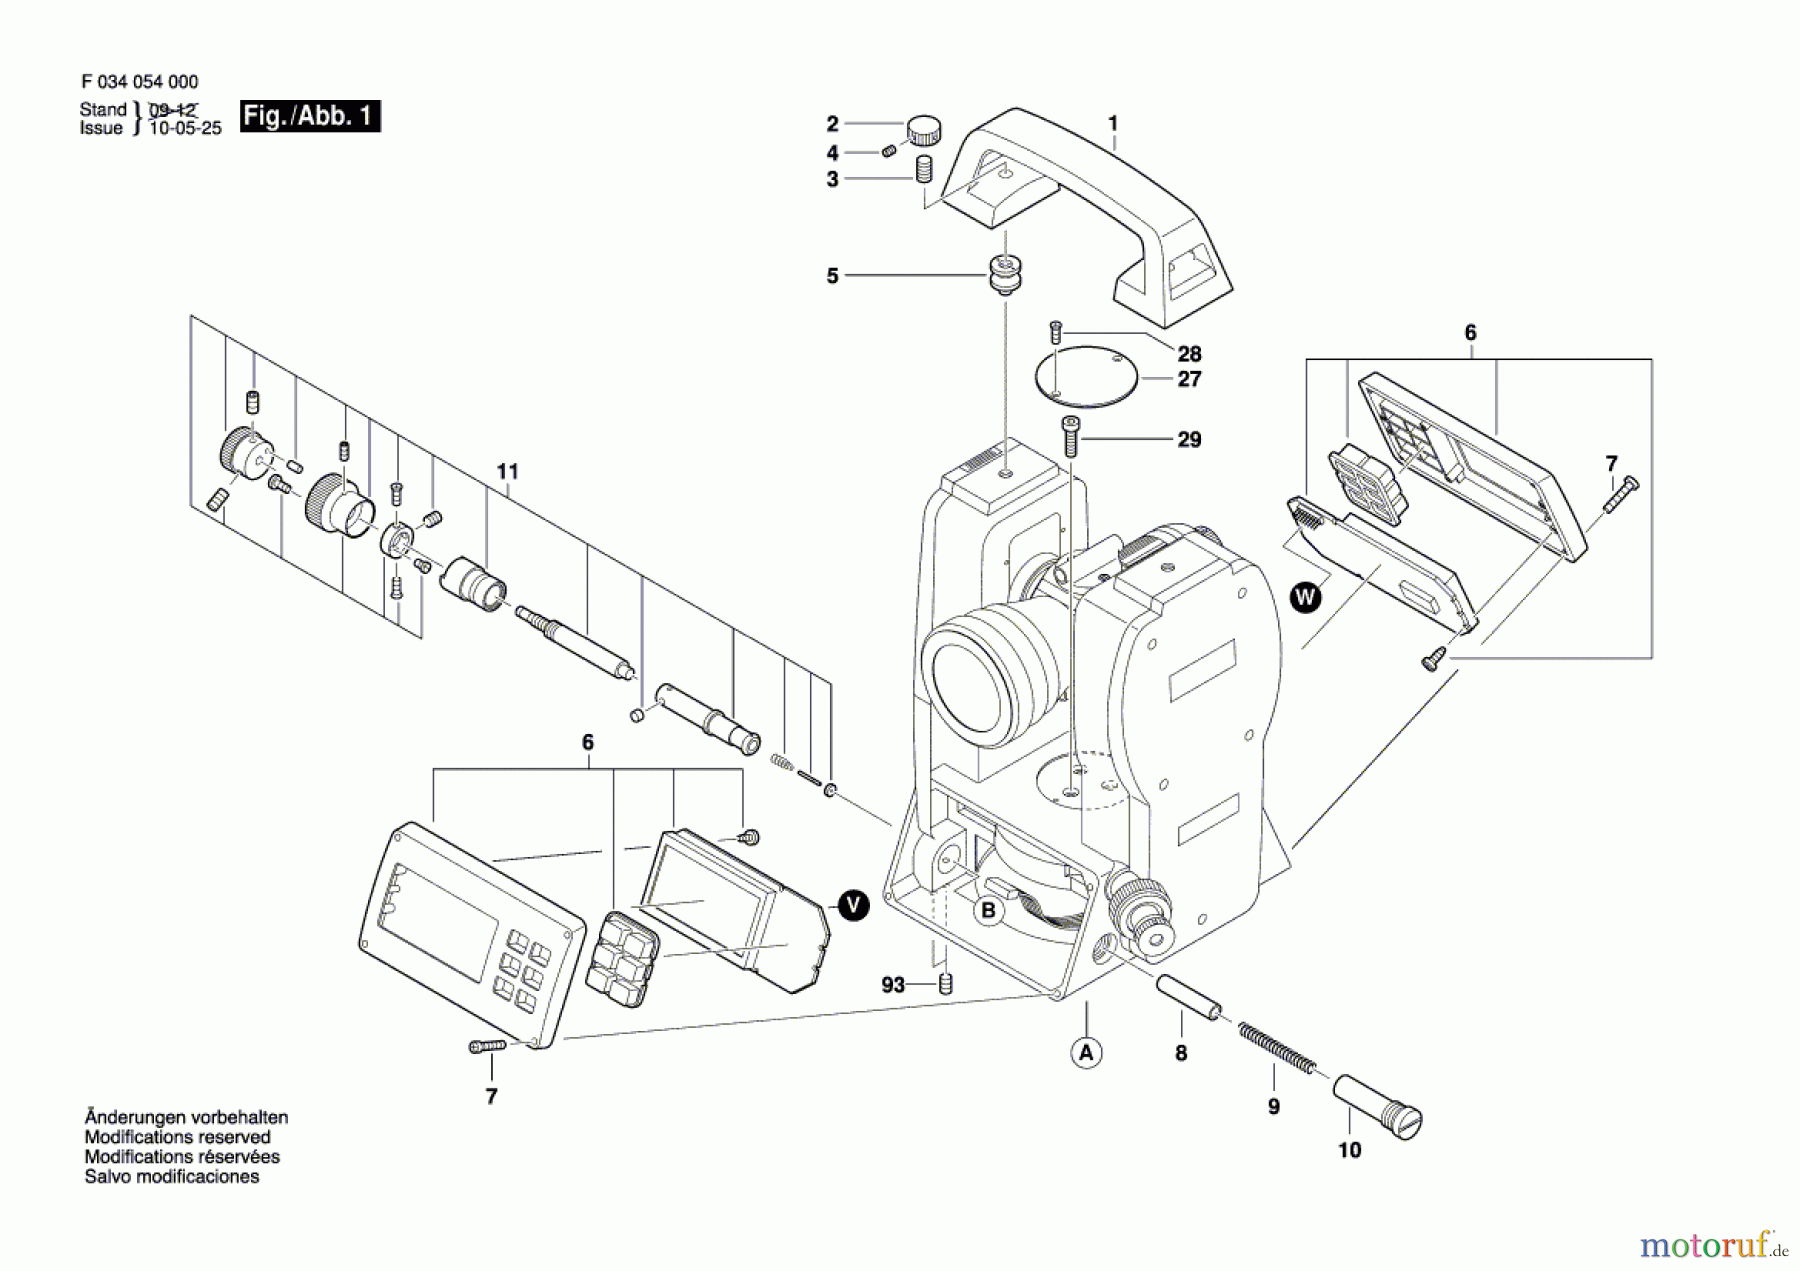  Bosch Werkzeug Teleskop 56-DGT10 Seite 1